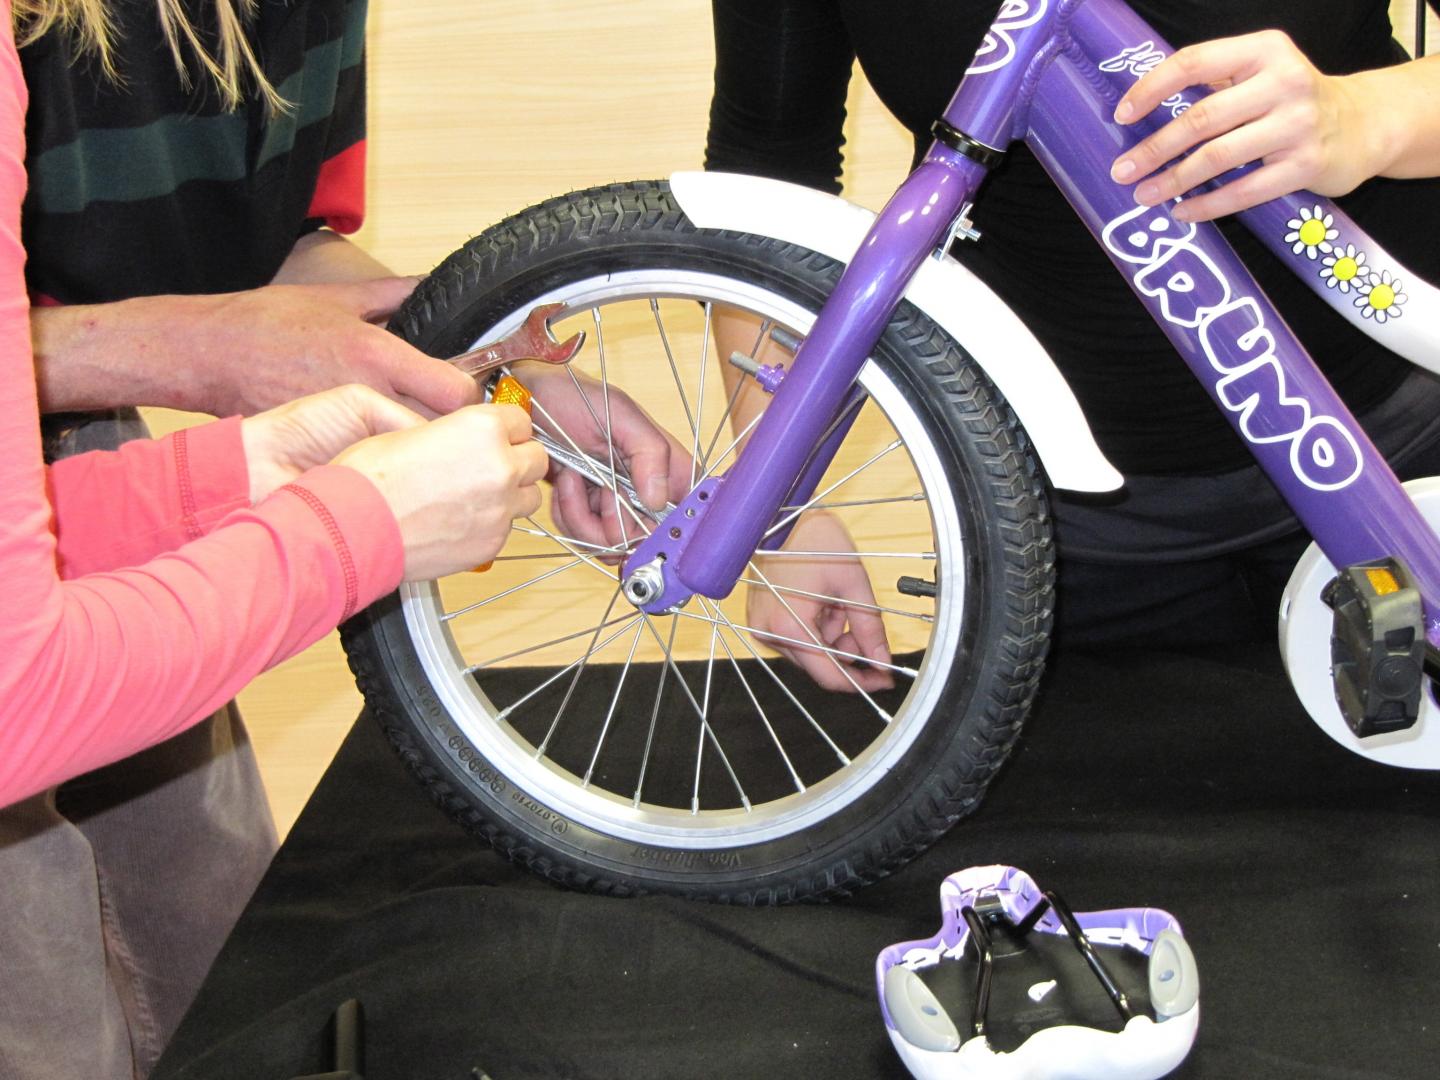 Udeleženci sestavljajo kolo na timskem programu Tovarna koles